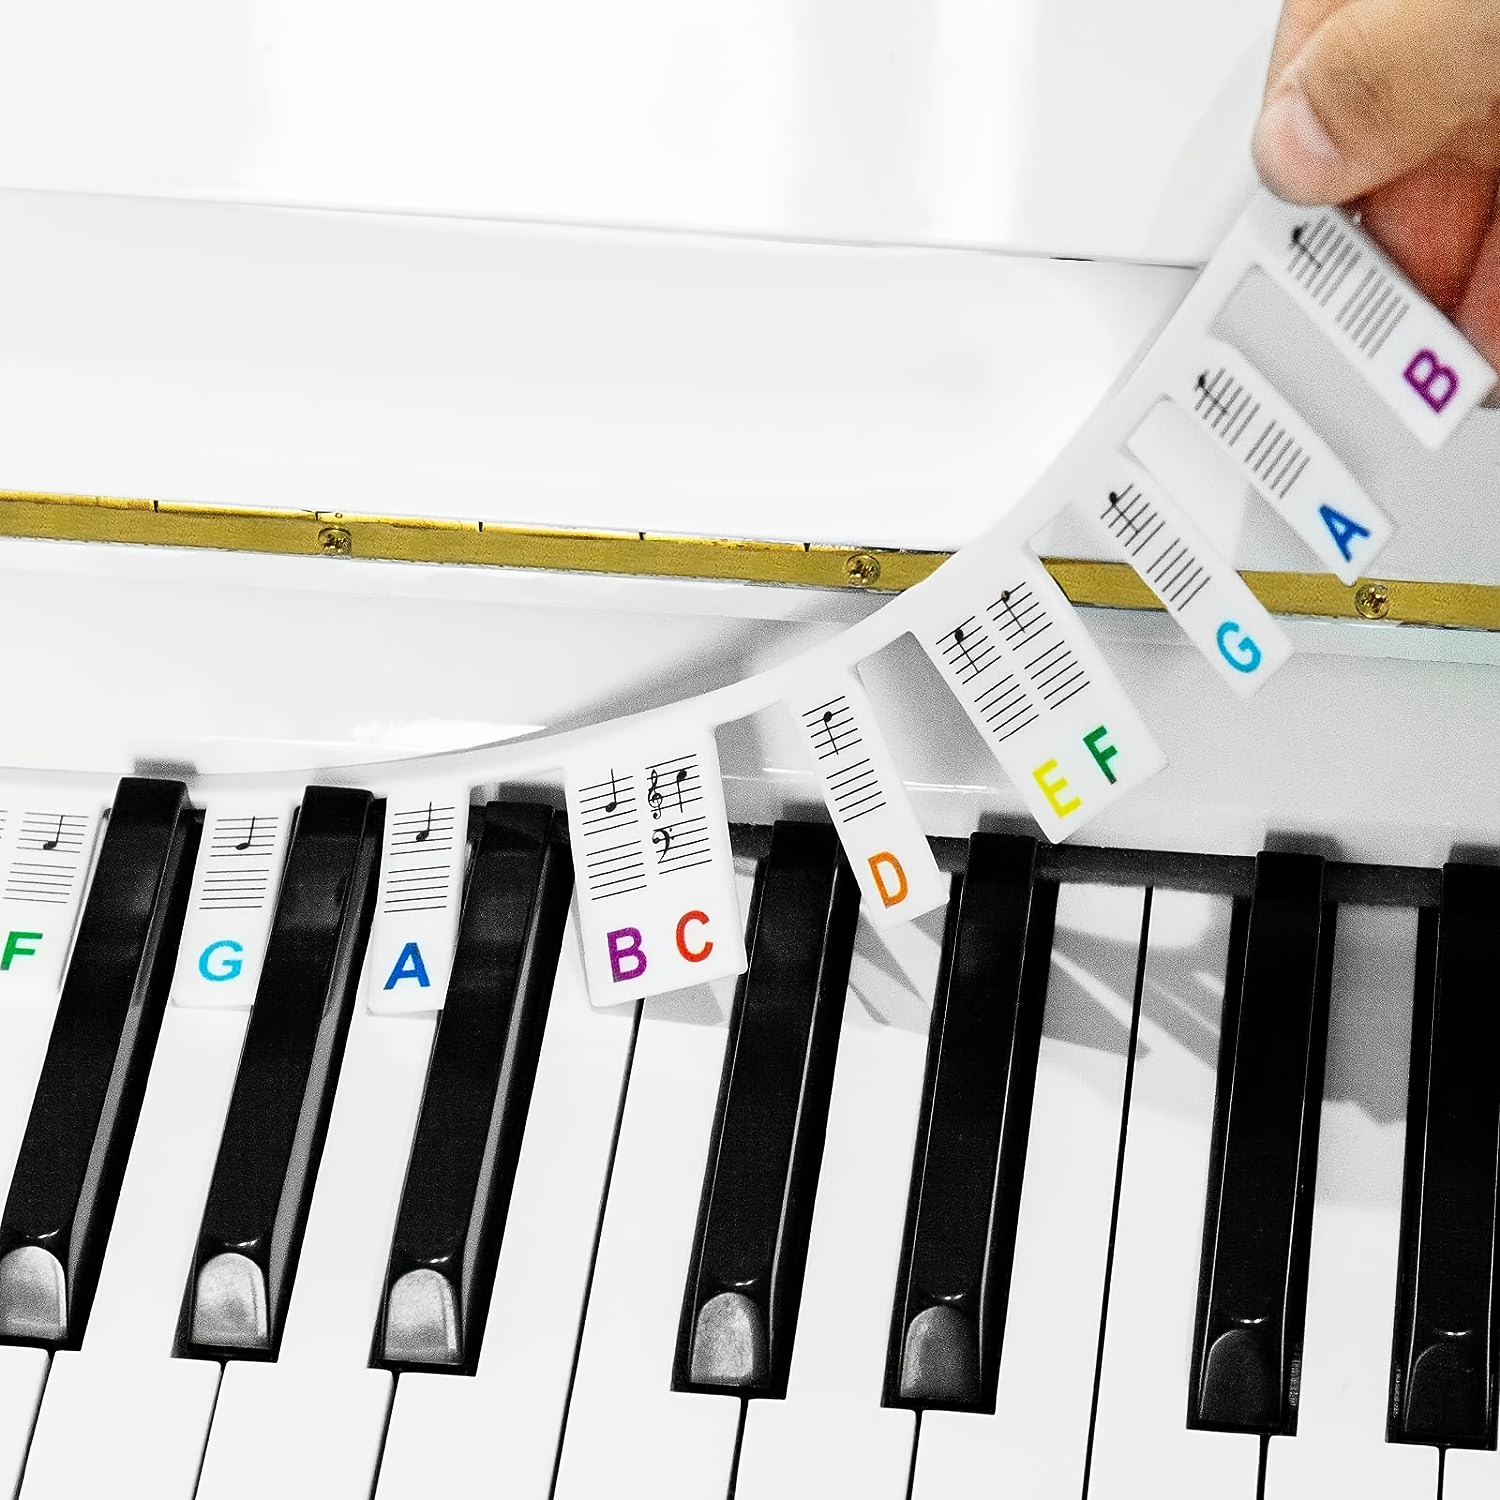 Clavier de piano, notes de piano en silicone, instructions (français non  garanti), autocollants pour piano, accessoires de piano pour 88 touches de